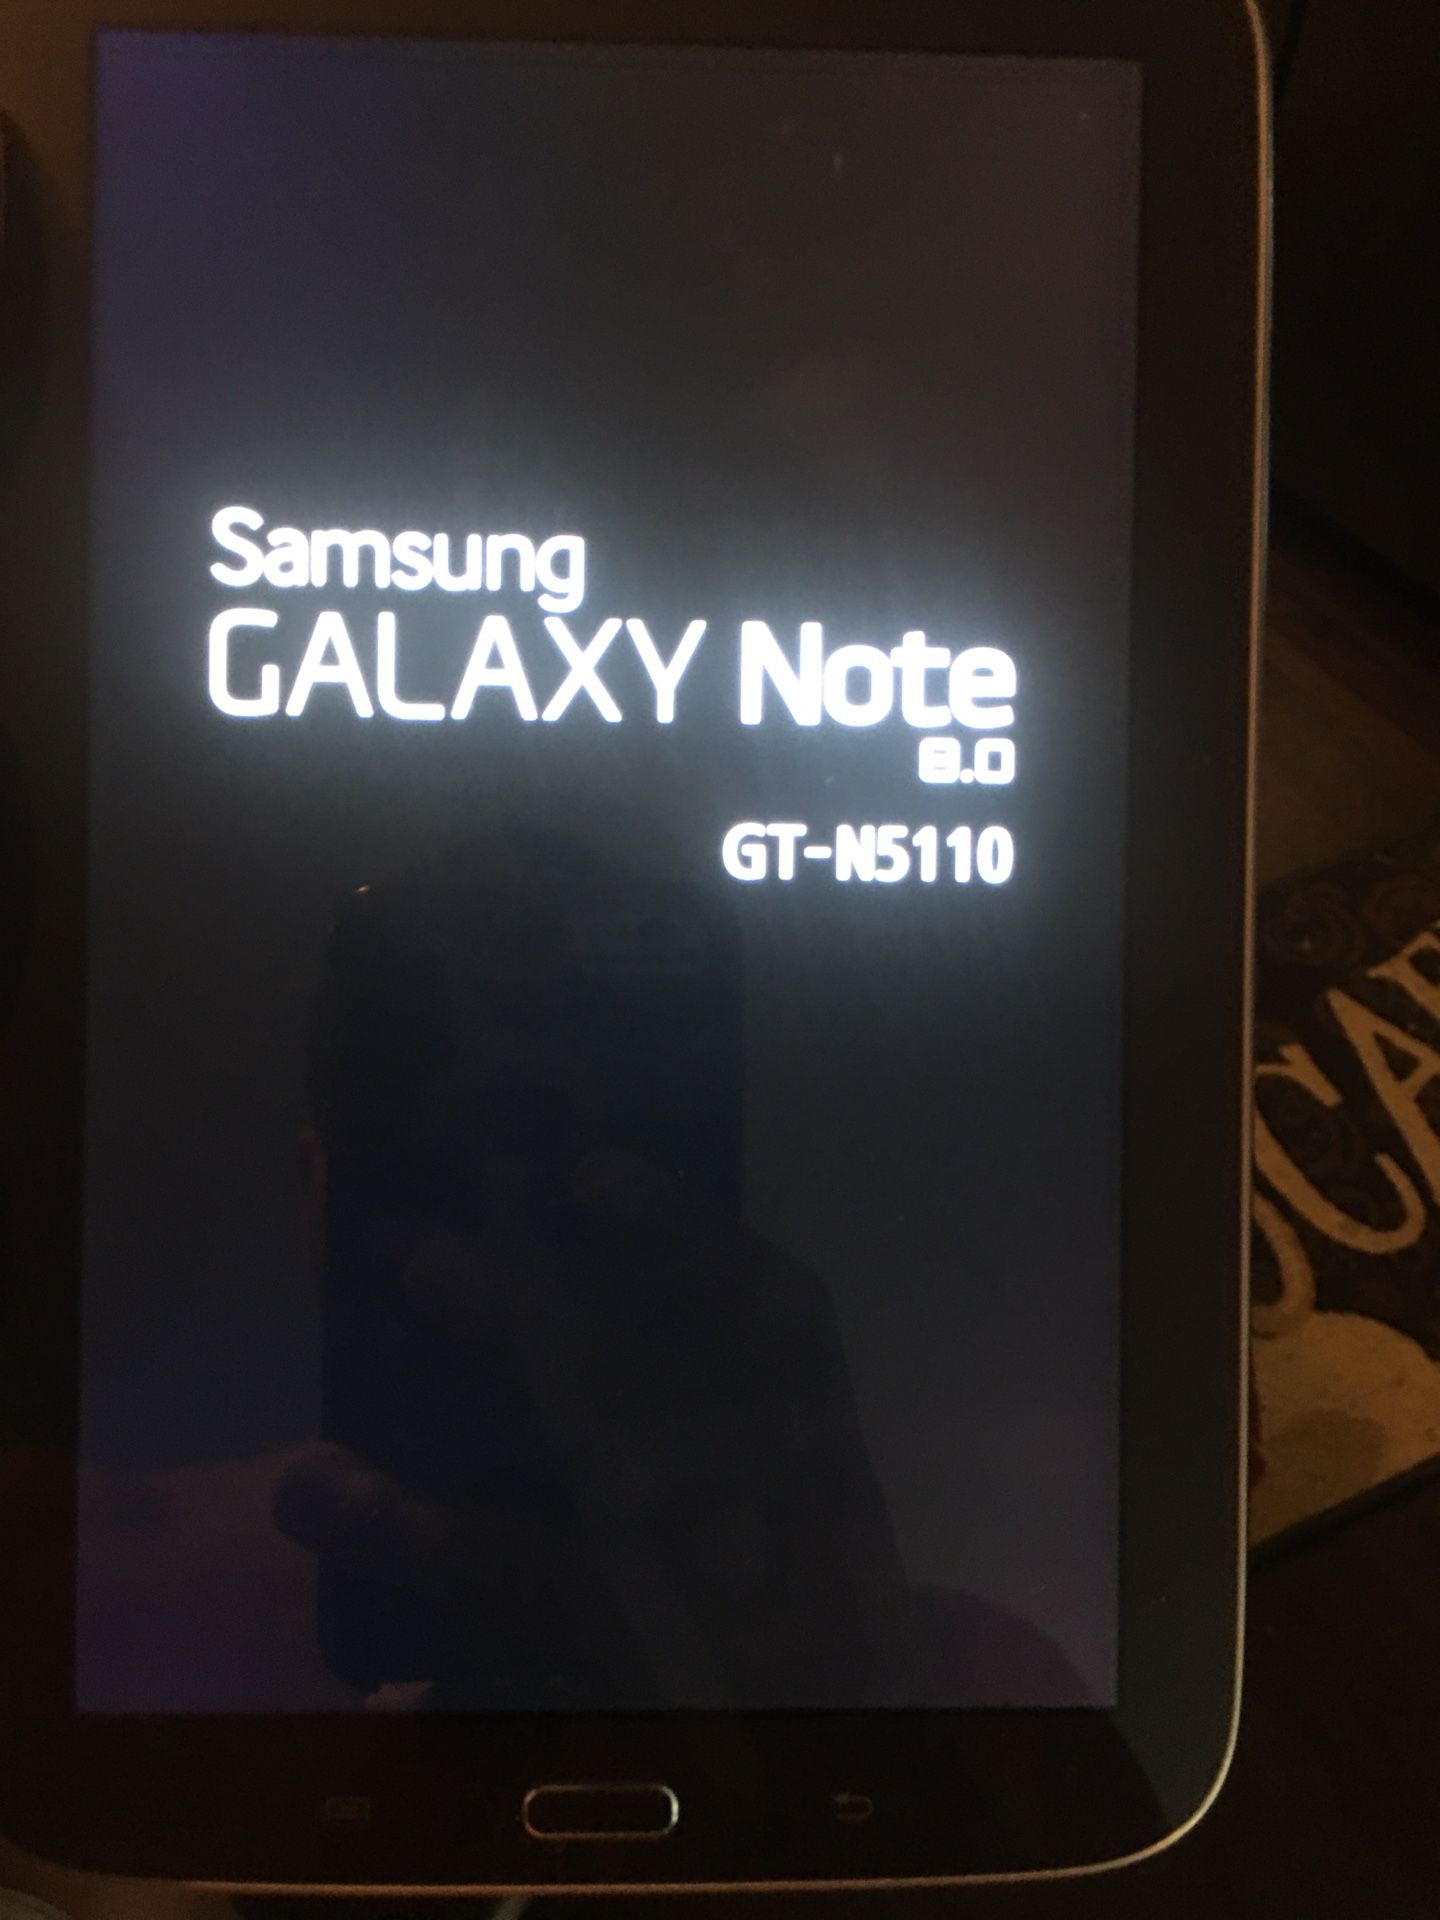 Wonderful Samsung Galaxy Note 8.0